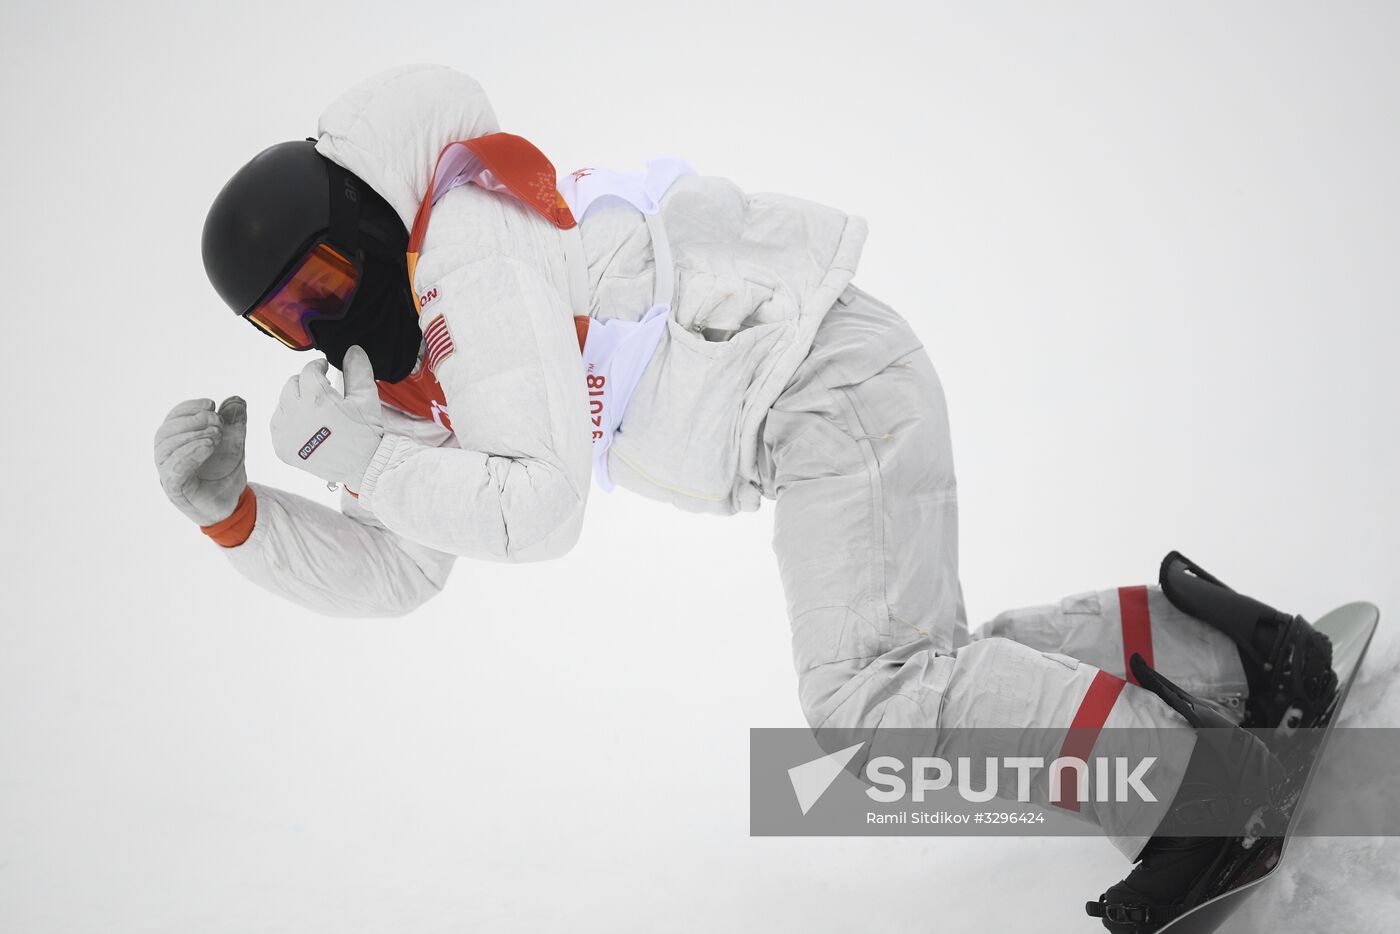 2018 Winter Olympics. Snowboarding. Men. Halfpipe. Finals